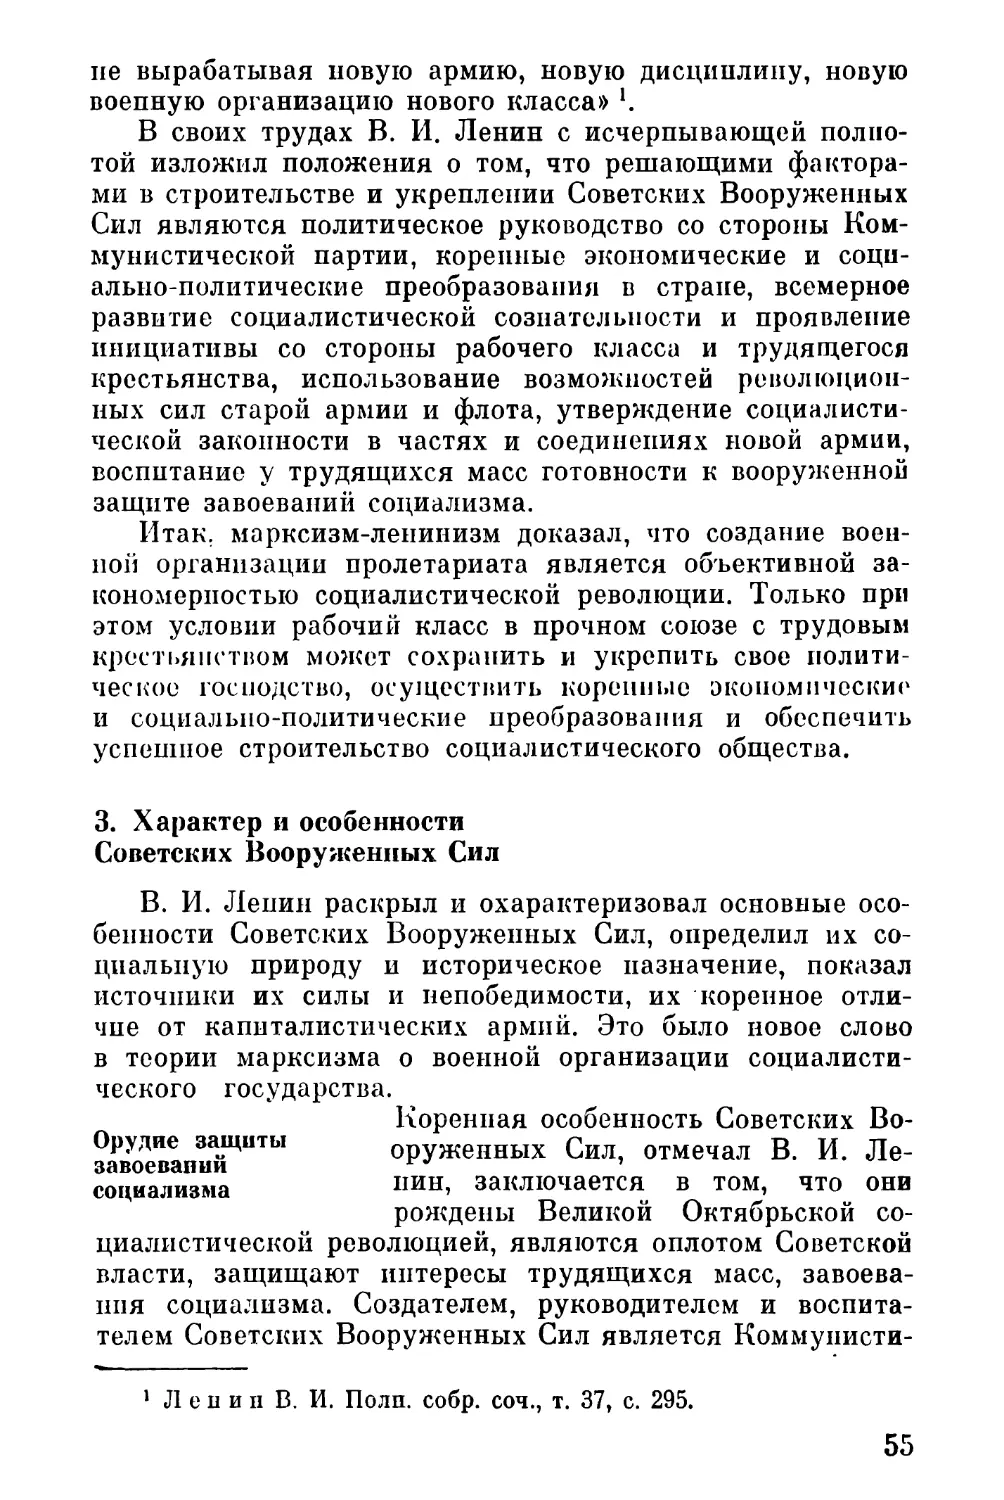 3. Характер и особенности Советских Вооруженных Сил